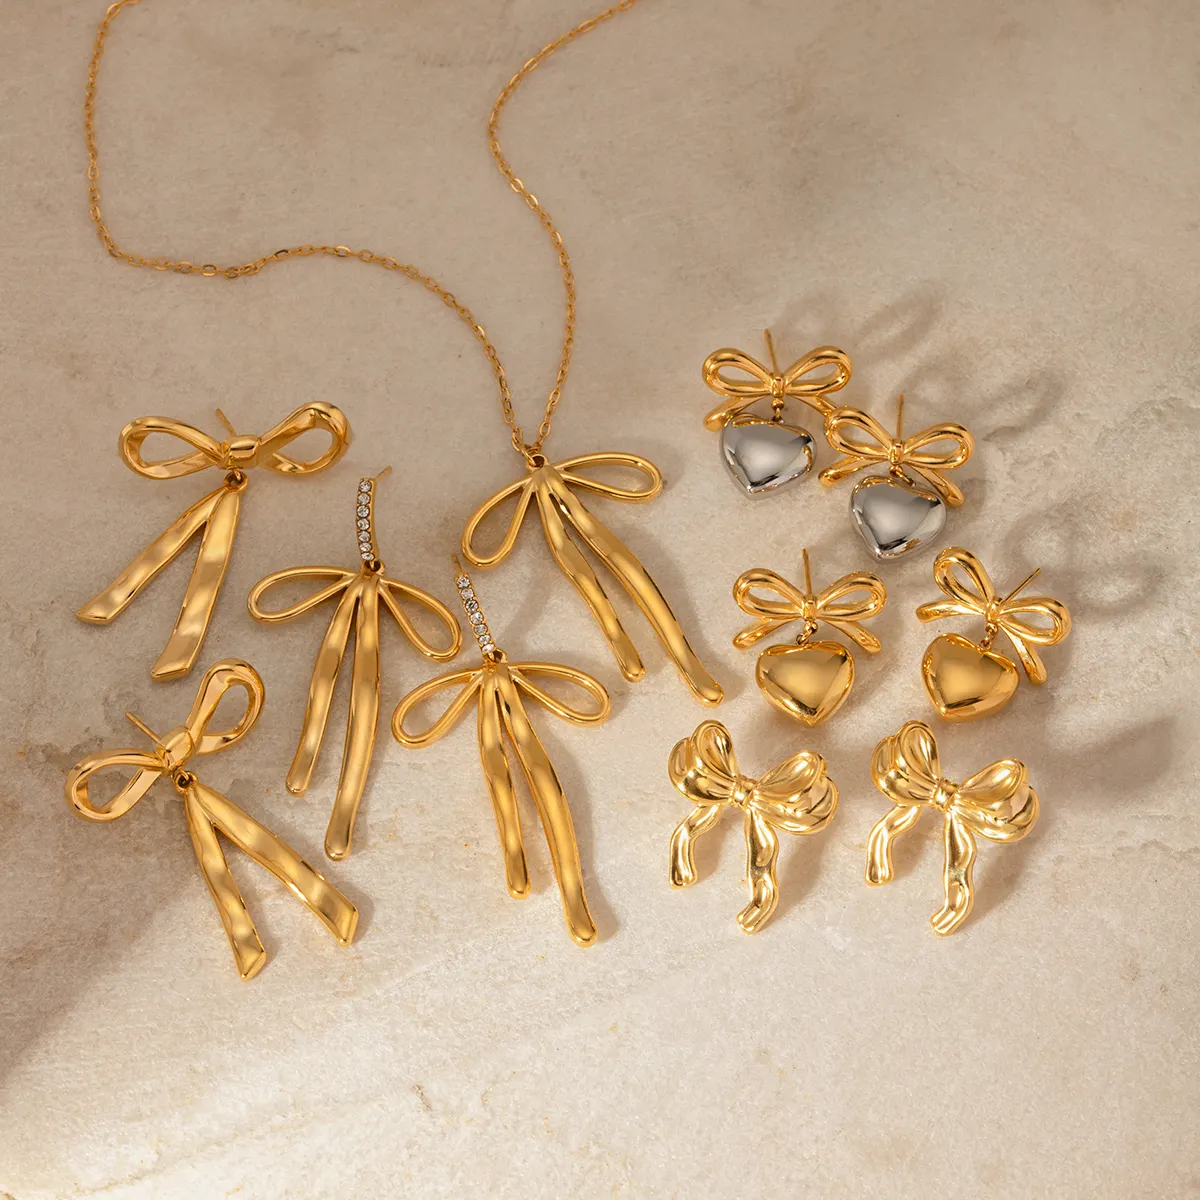 J & D новые трендовые дизайнерские кольца серии золотые украшения из нержавеющей стали лук кулон ожерелье серьги наборы